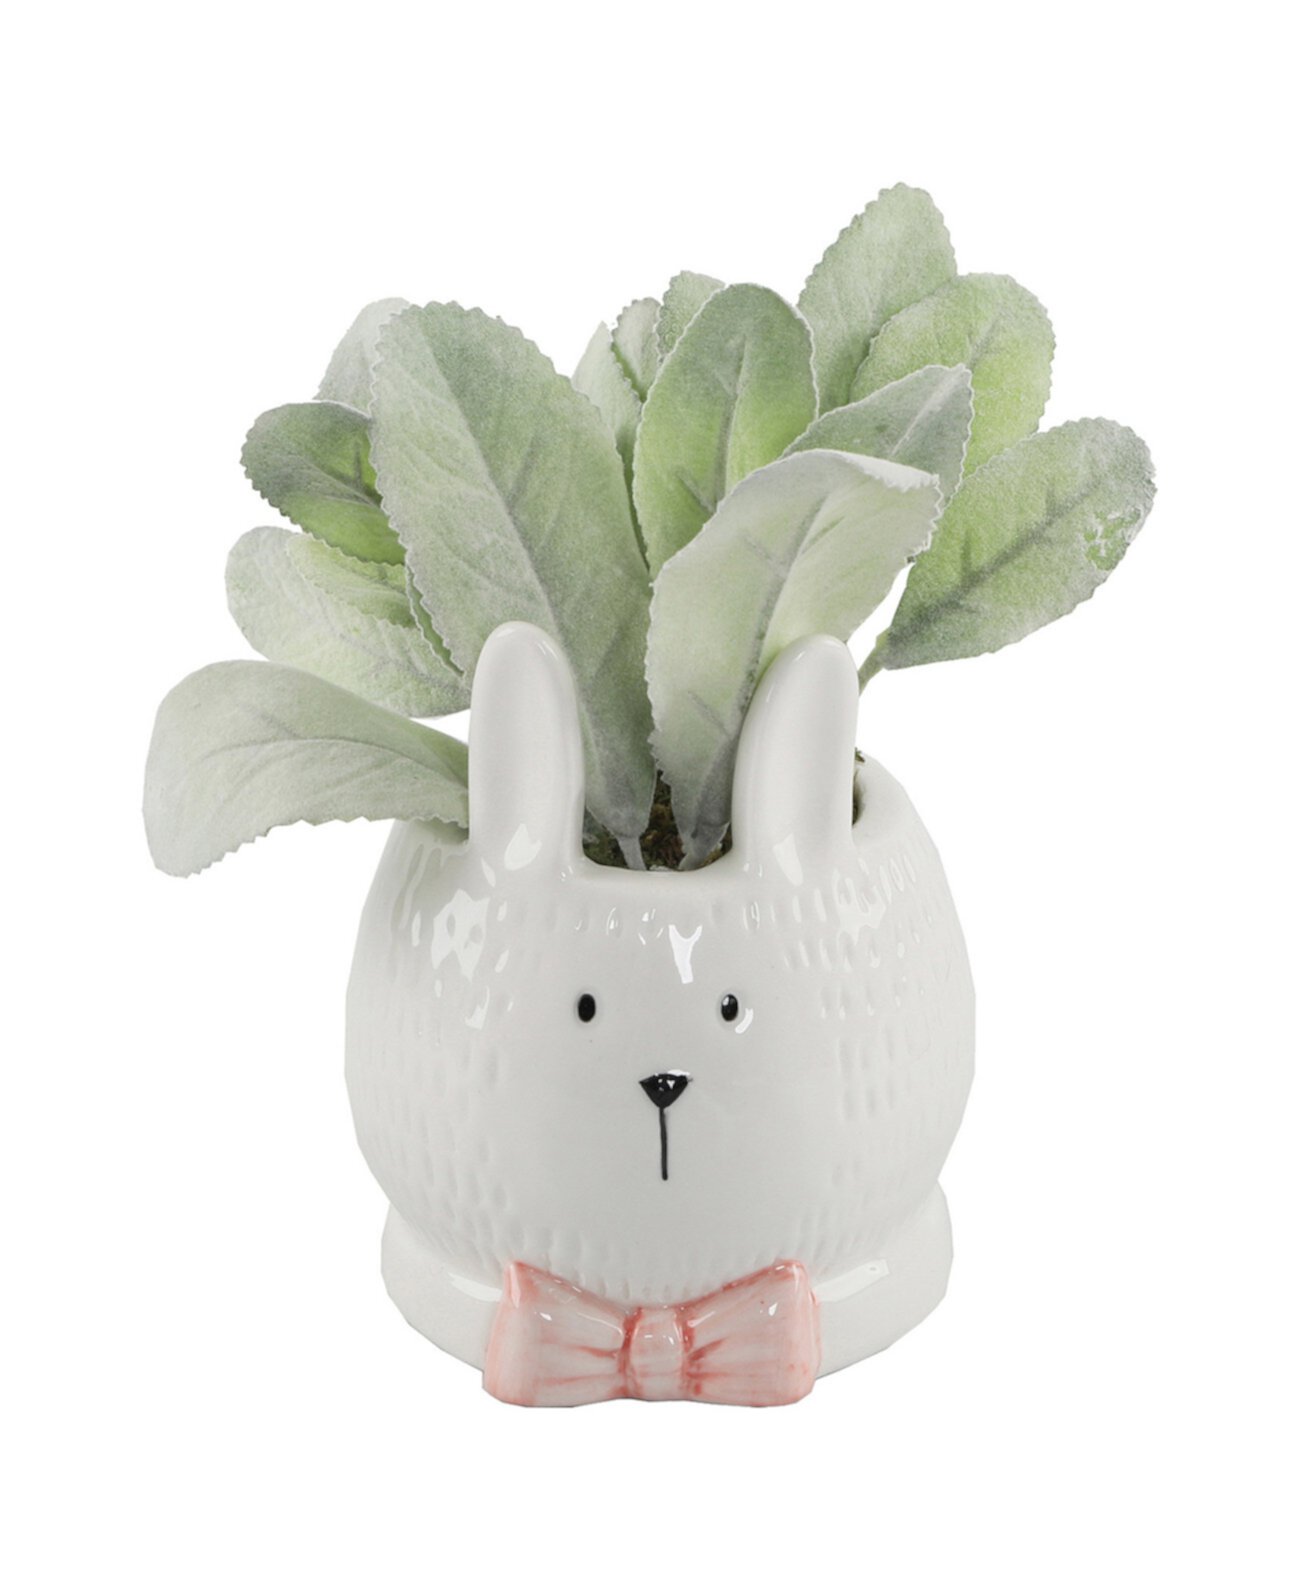 Керамический кролик с ушками ягненка и розовым бантом, 4 дюйма FLORA BUNDA